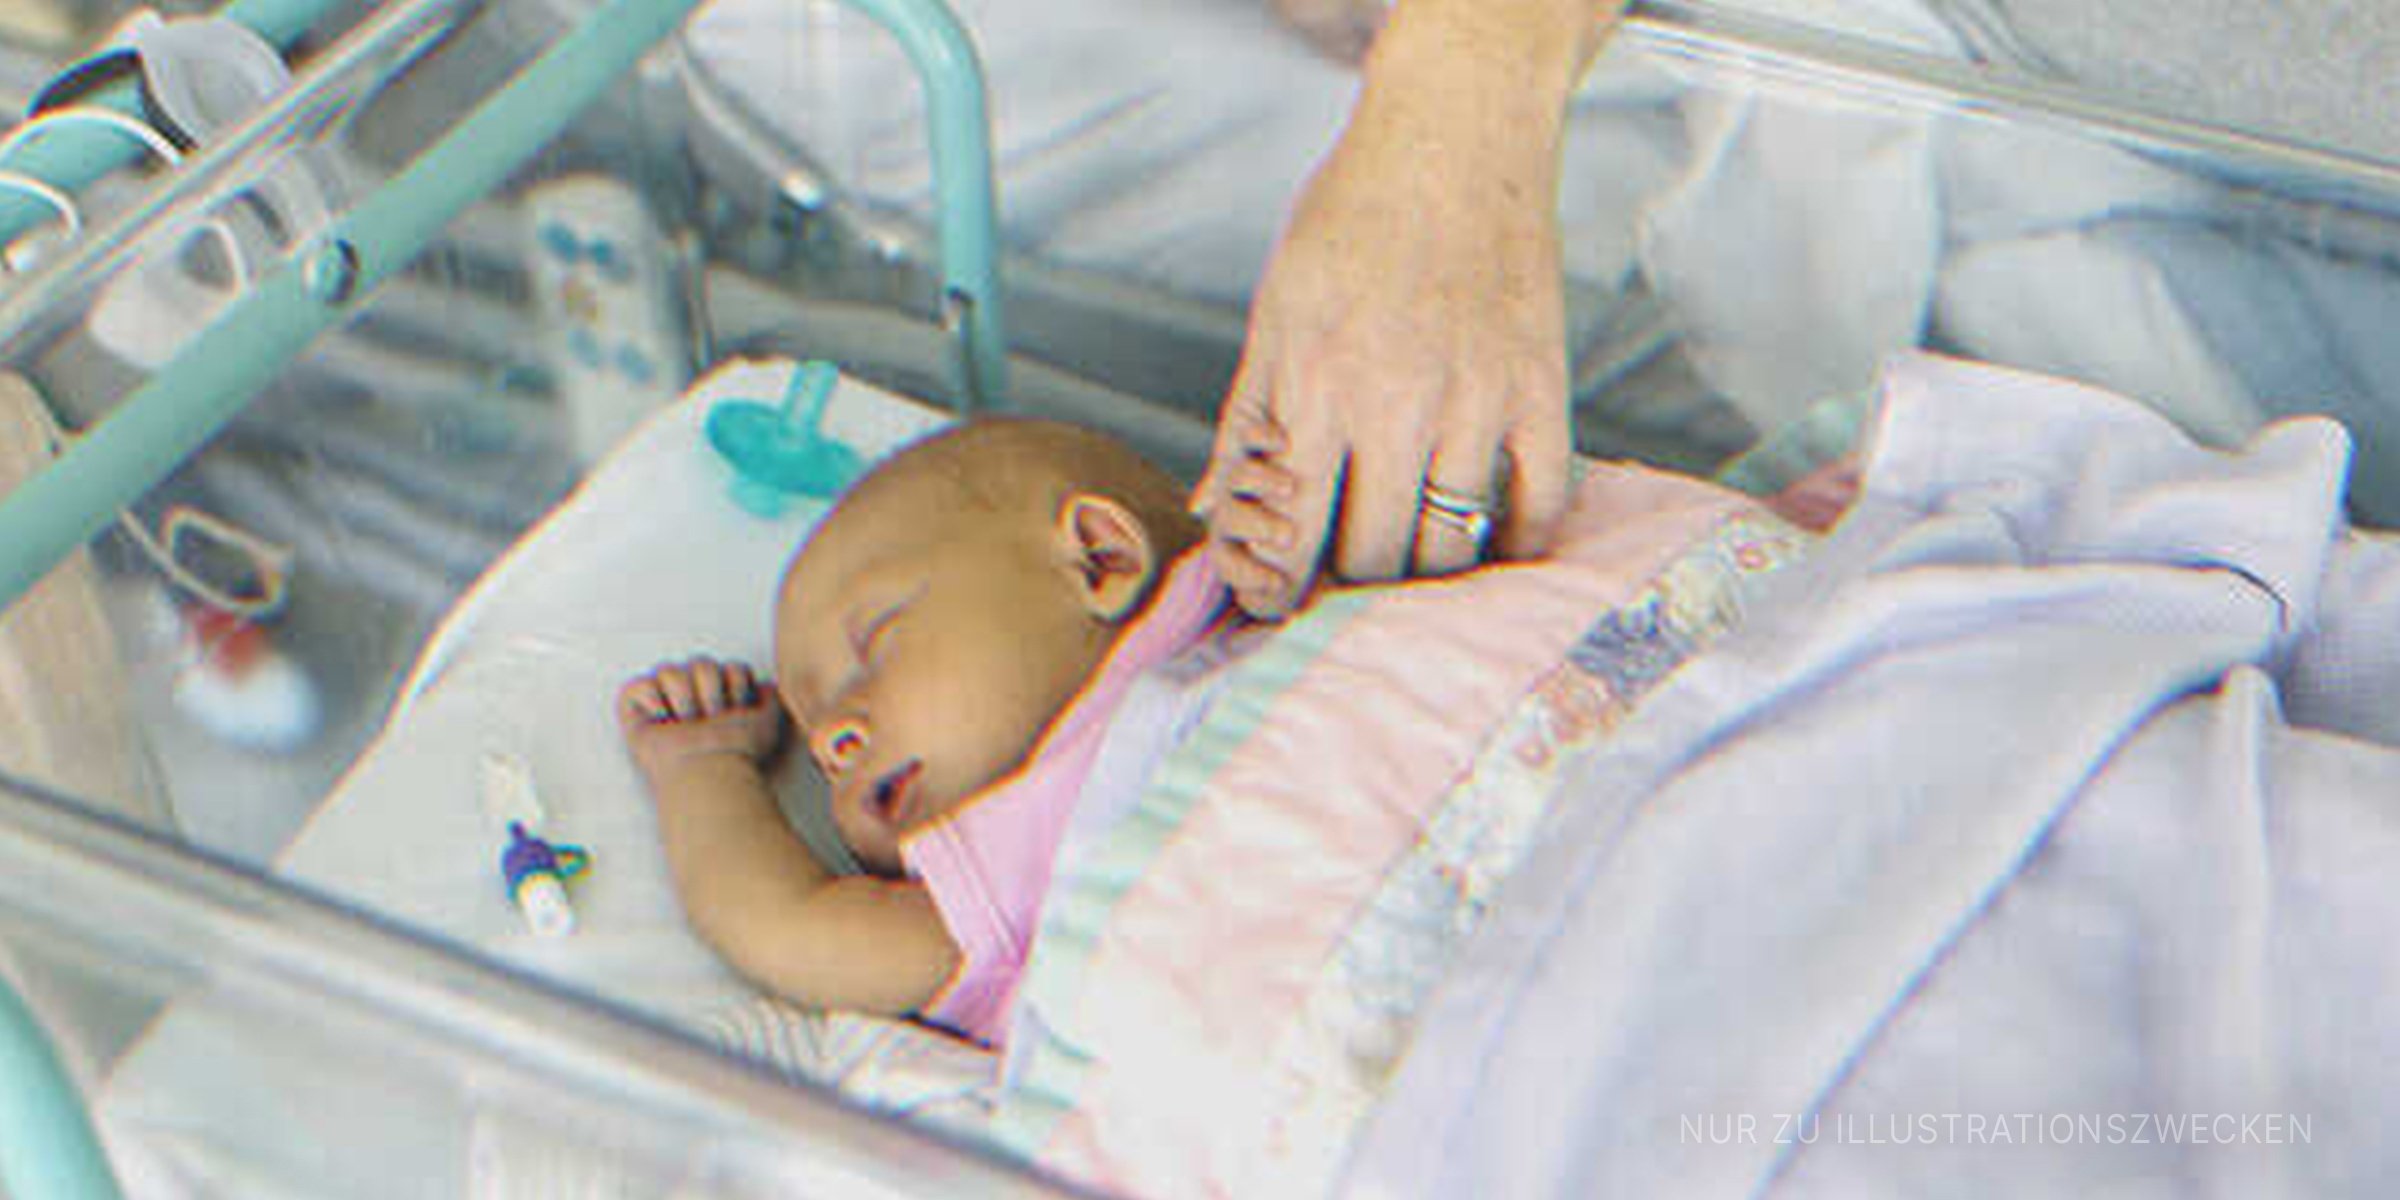 Neugeborenes Baby im Krankenhaus. | Quelle: Getty Images